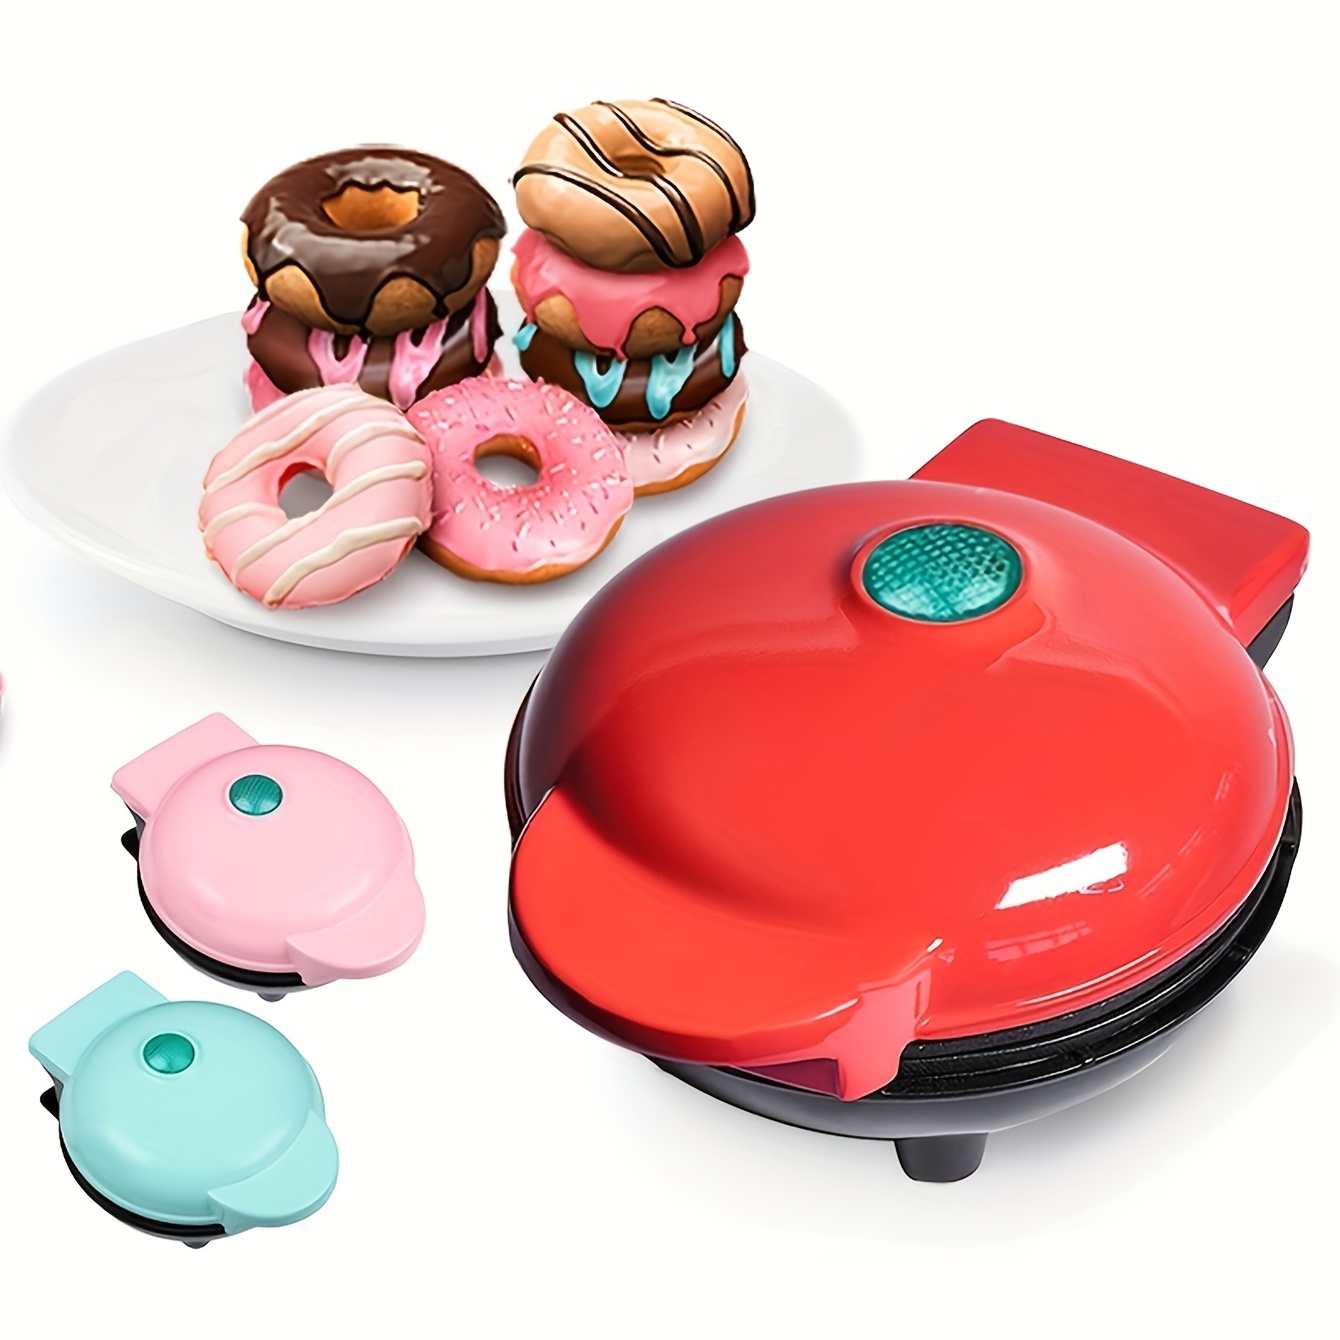  LKJHSDFG Mini máquina para hacer donas eléctrica de 1000 W con  sartén antiadherente Donuts Maker para desayuno, aperitivos y postres :  Hogar y Cocina